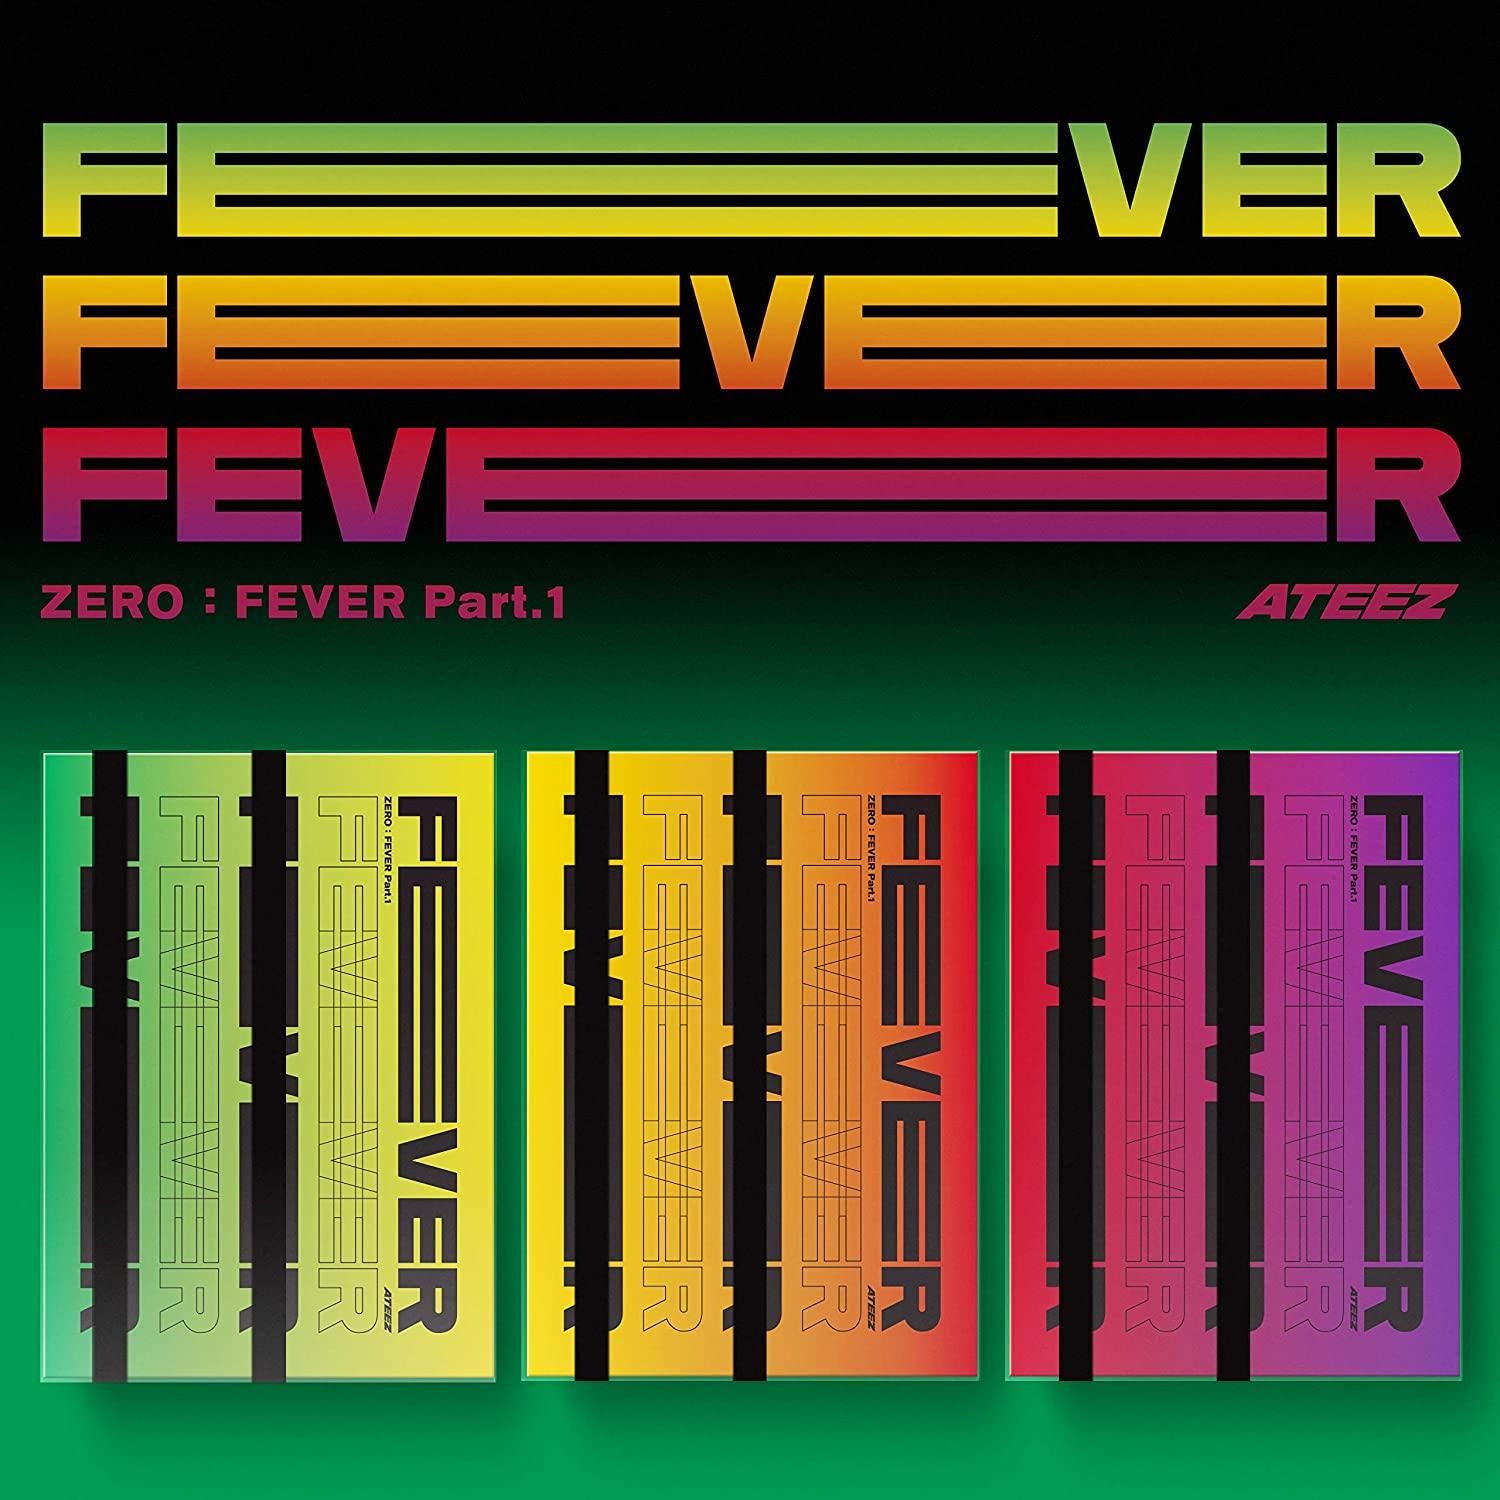 - Part.1 Ateez Fever - (CD) Zero: